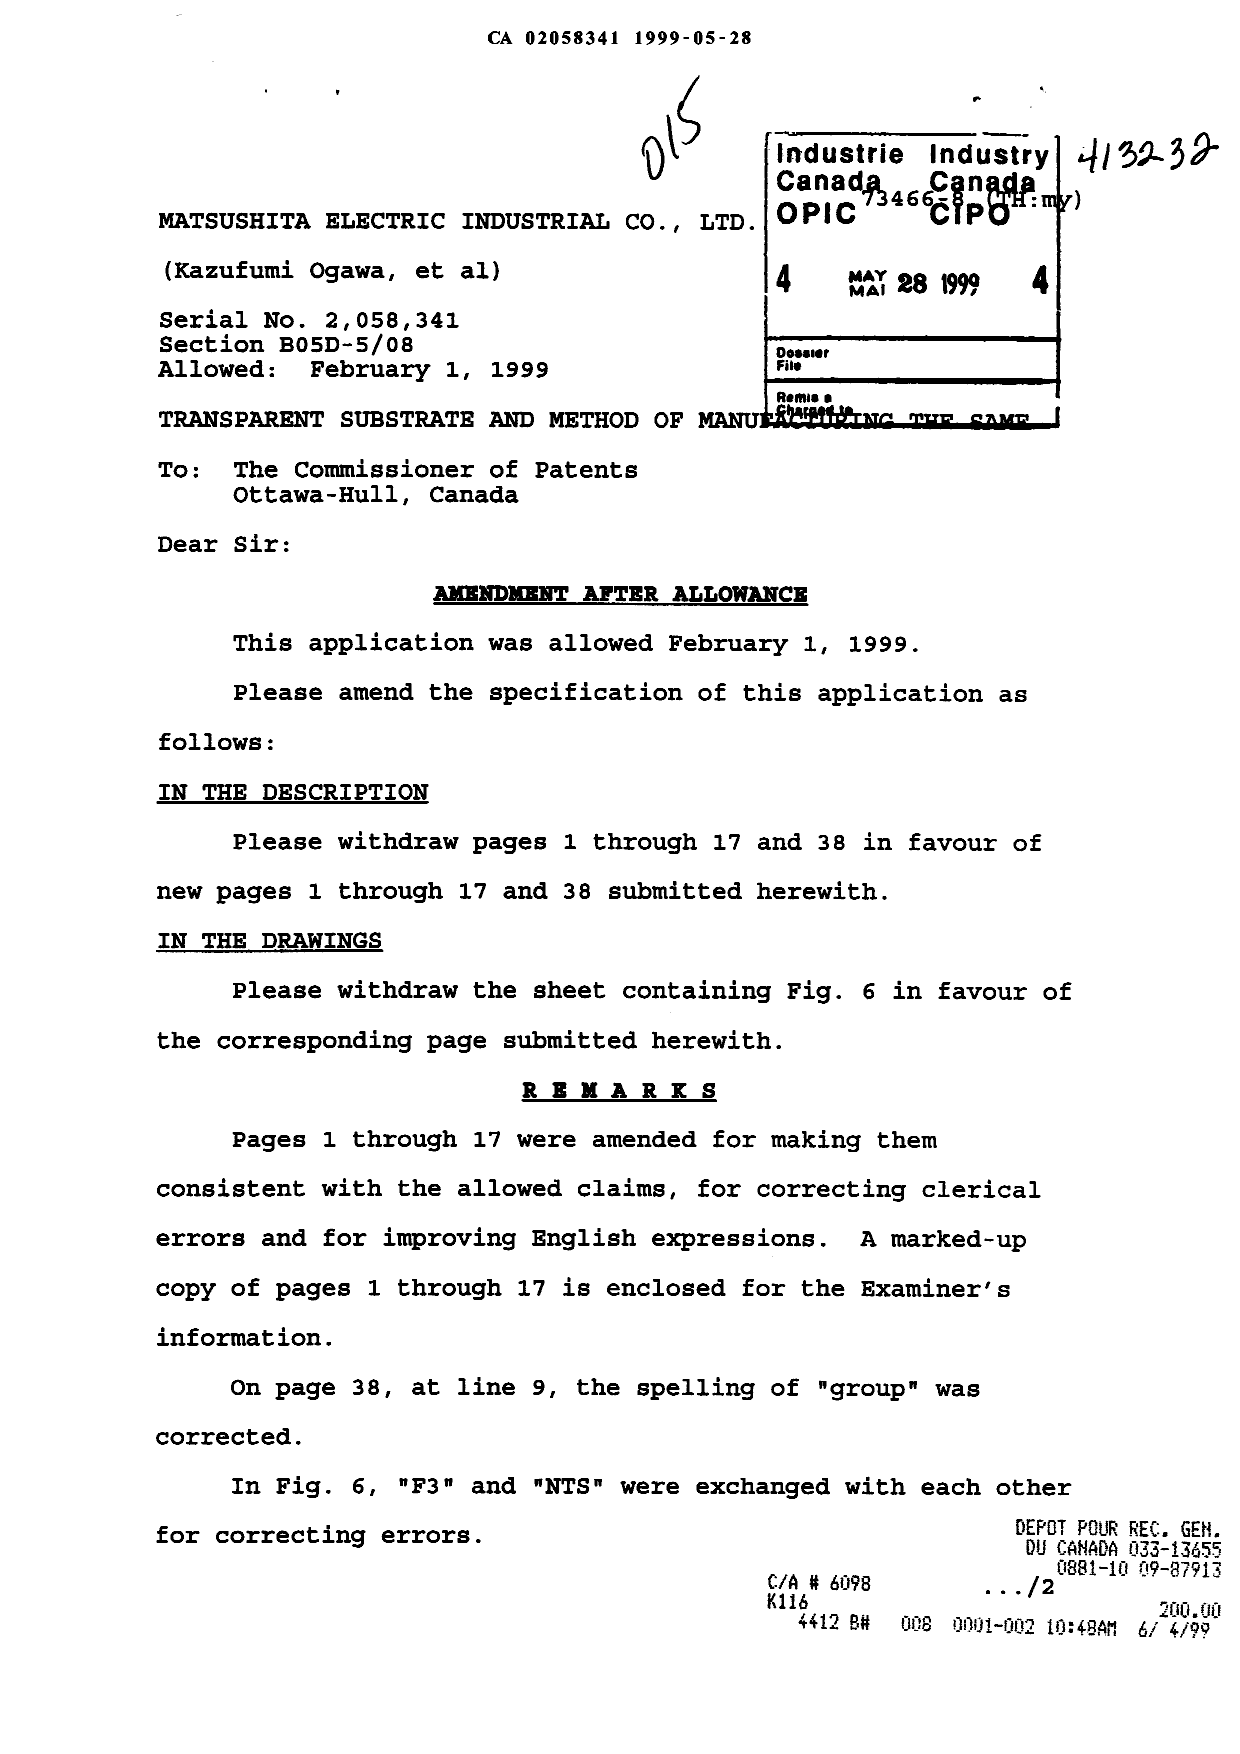 Document de brevet canadien 2058341. Poursuite-Amendment 19990528. Image 1 de 38